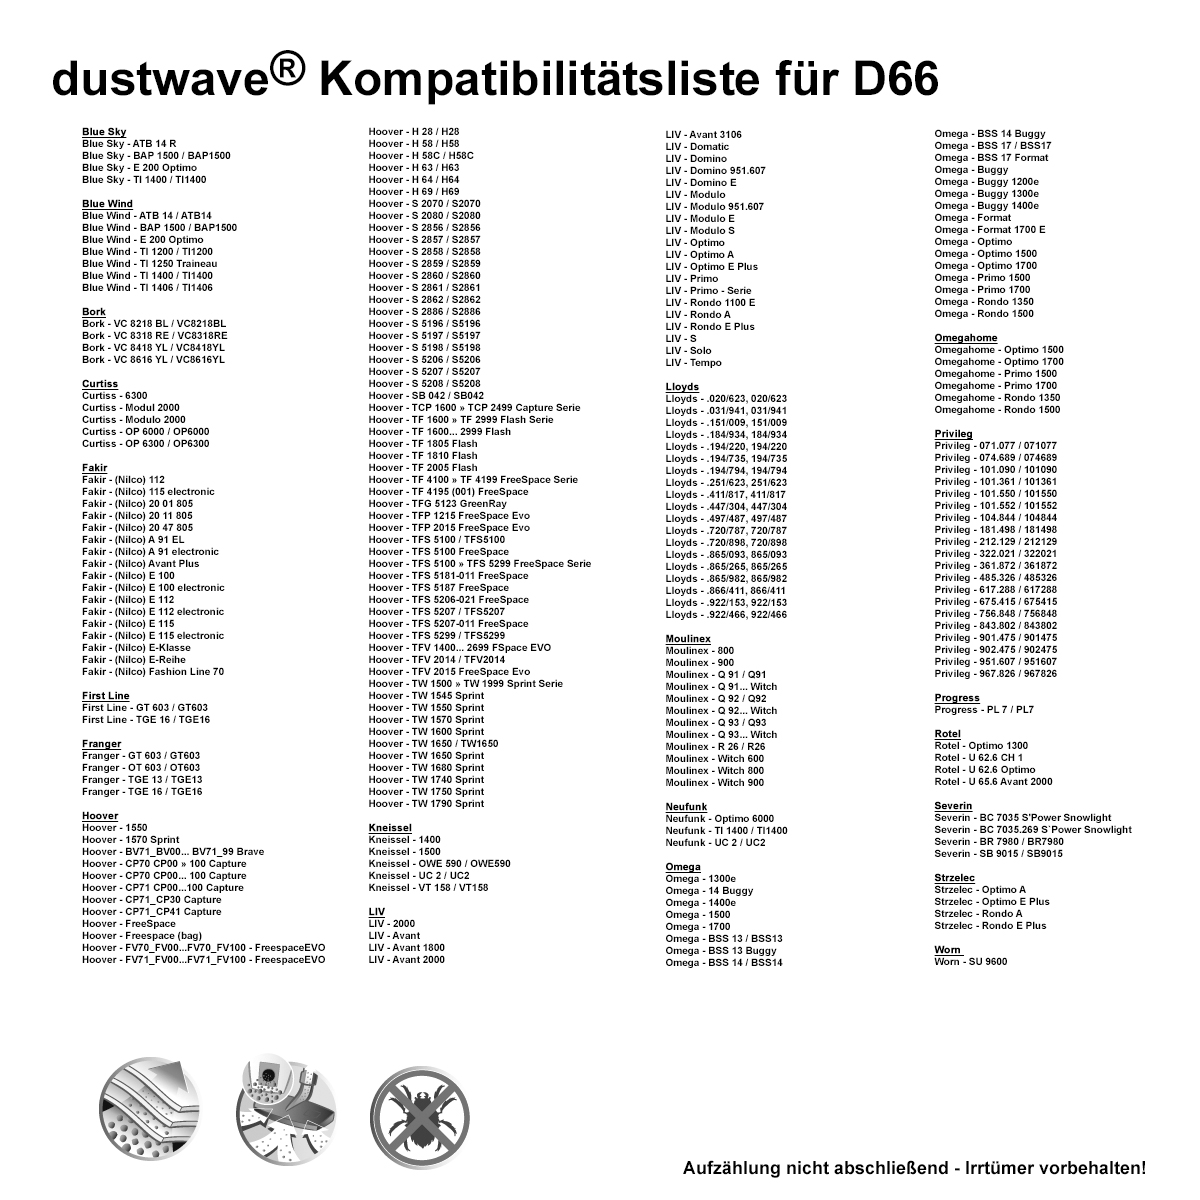 Dustwave® 40 Staubsaugerbeutel für Hoover CP70 CP00 - 100 Capture - hocheffizient, mehrlagiges Mikrovlies mit Hygieneverschluss - Made in Germany